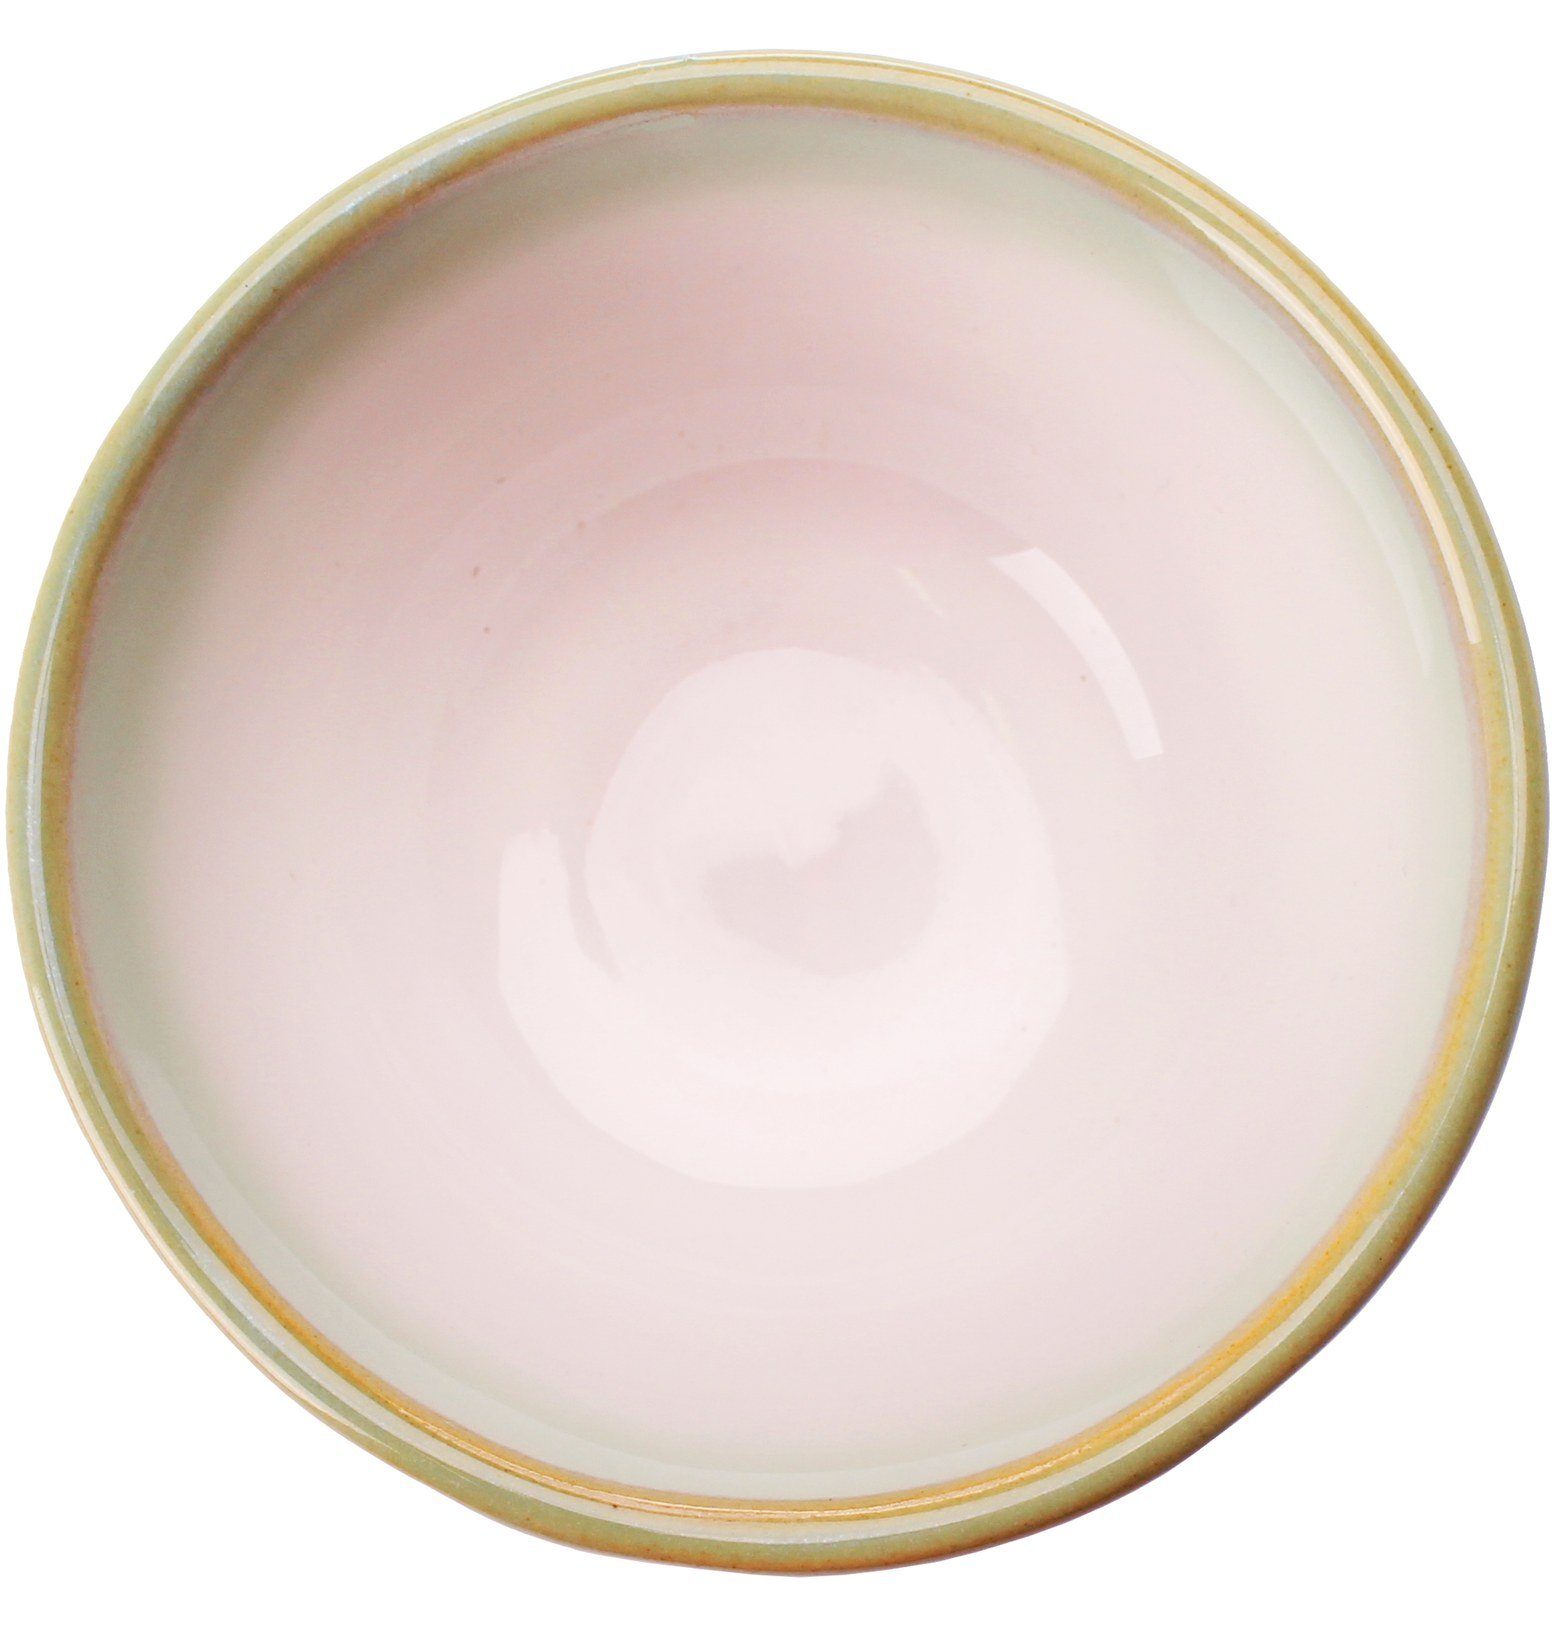 Goodwei Keramik Teezeremonie mit Set und (4-tlg), "Hasnunomi" Teeschale, Besen Halter Teeservice Matcha